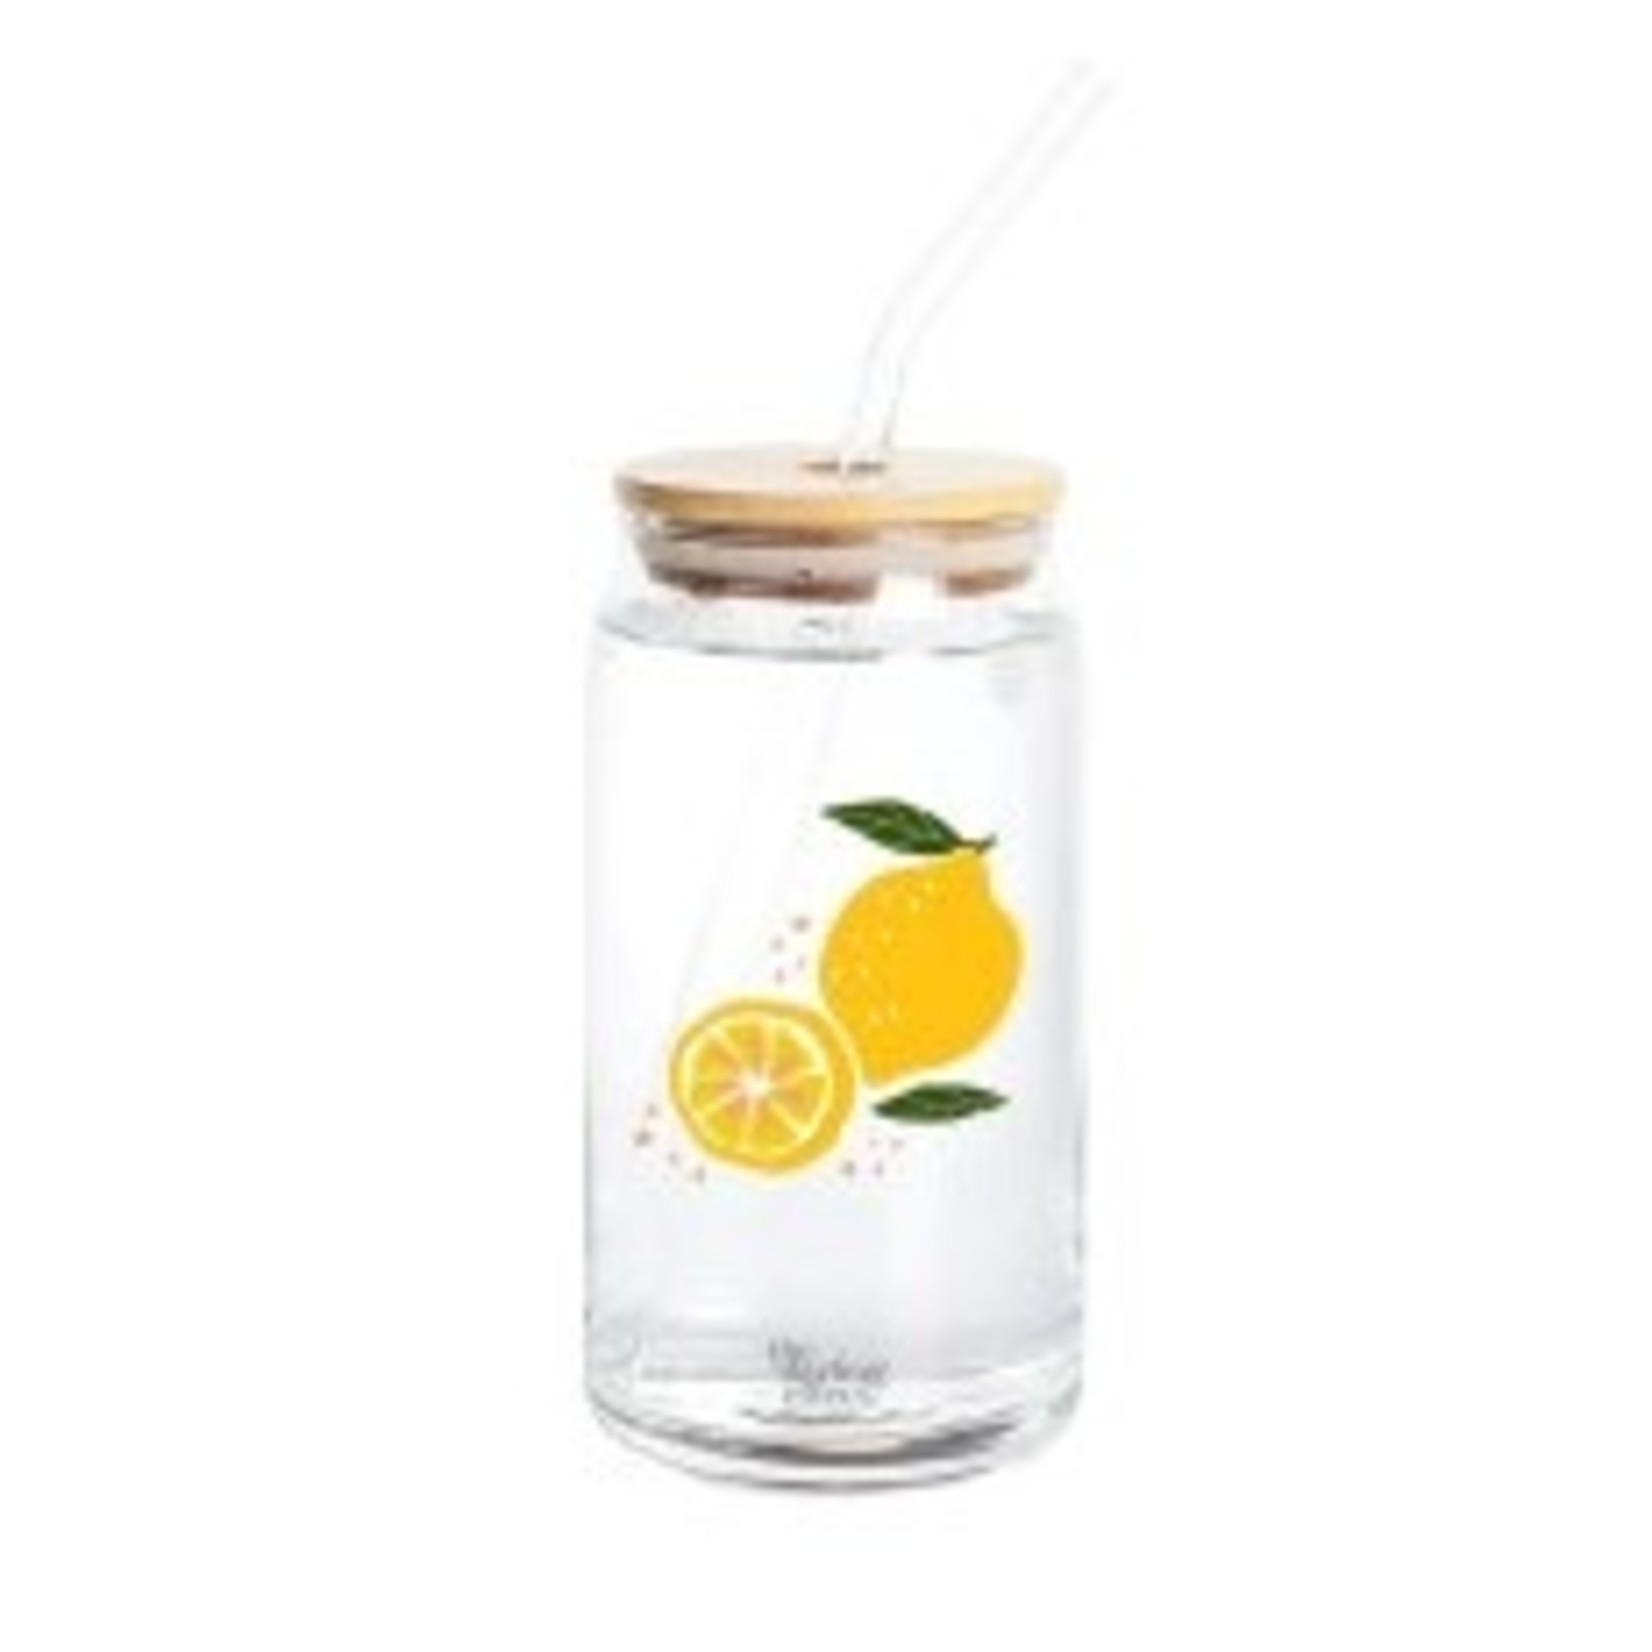 Citrus Lemon Glass Drinkware